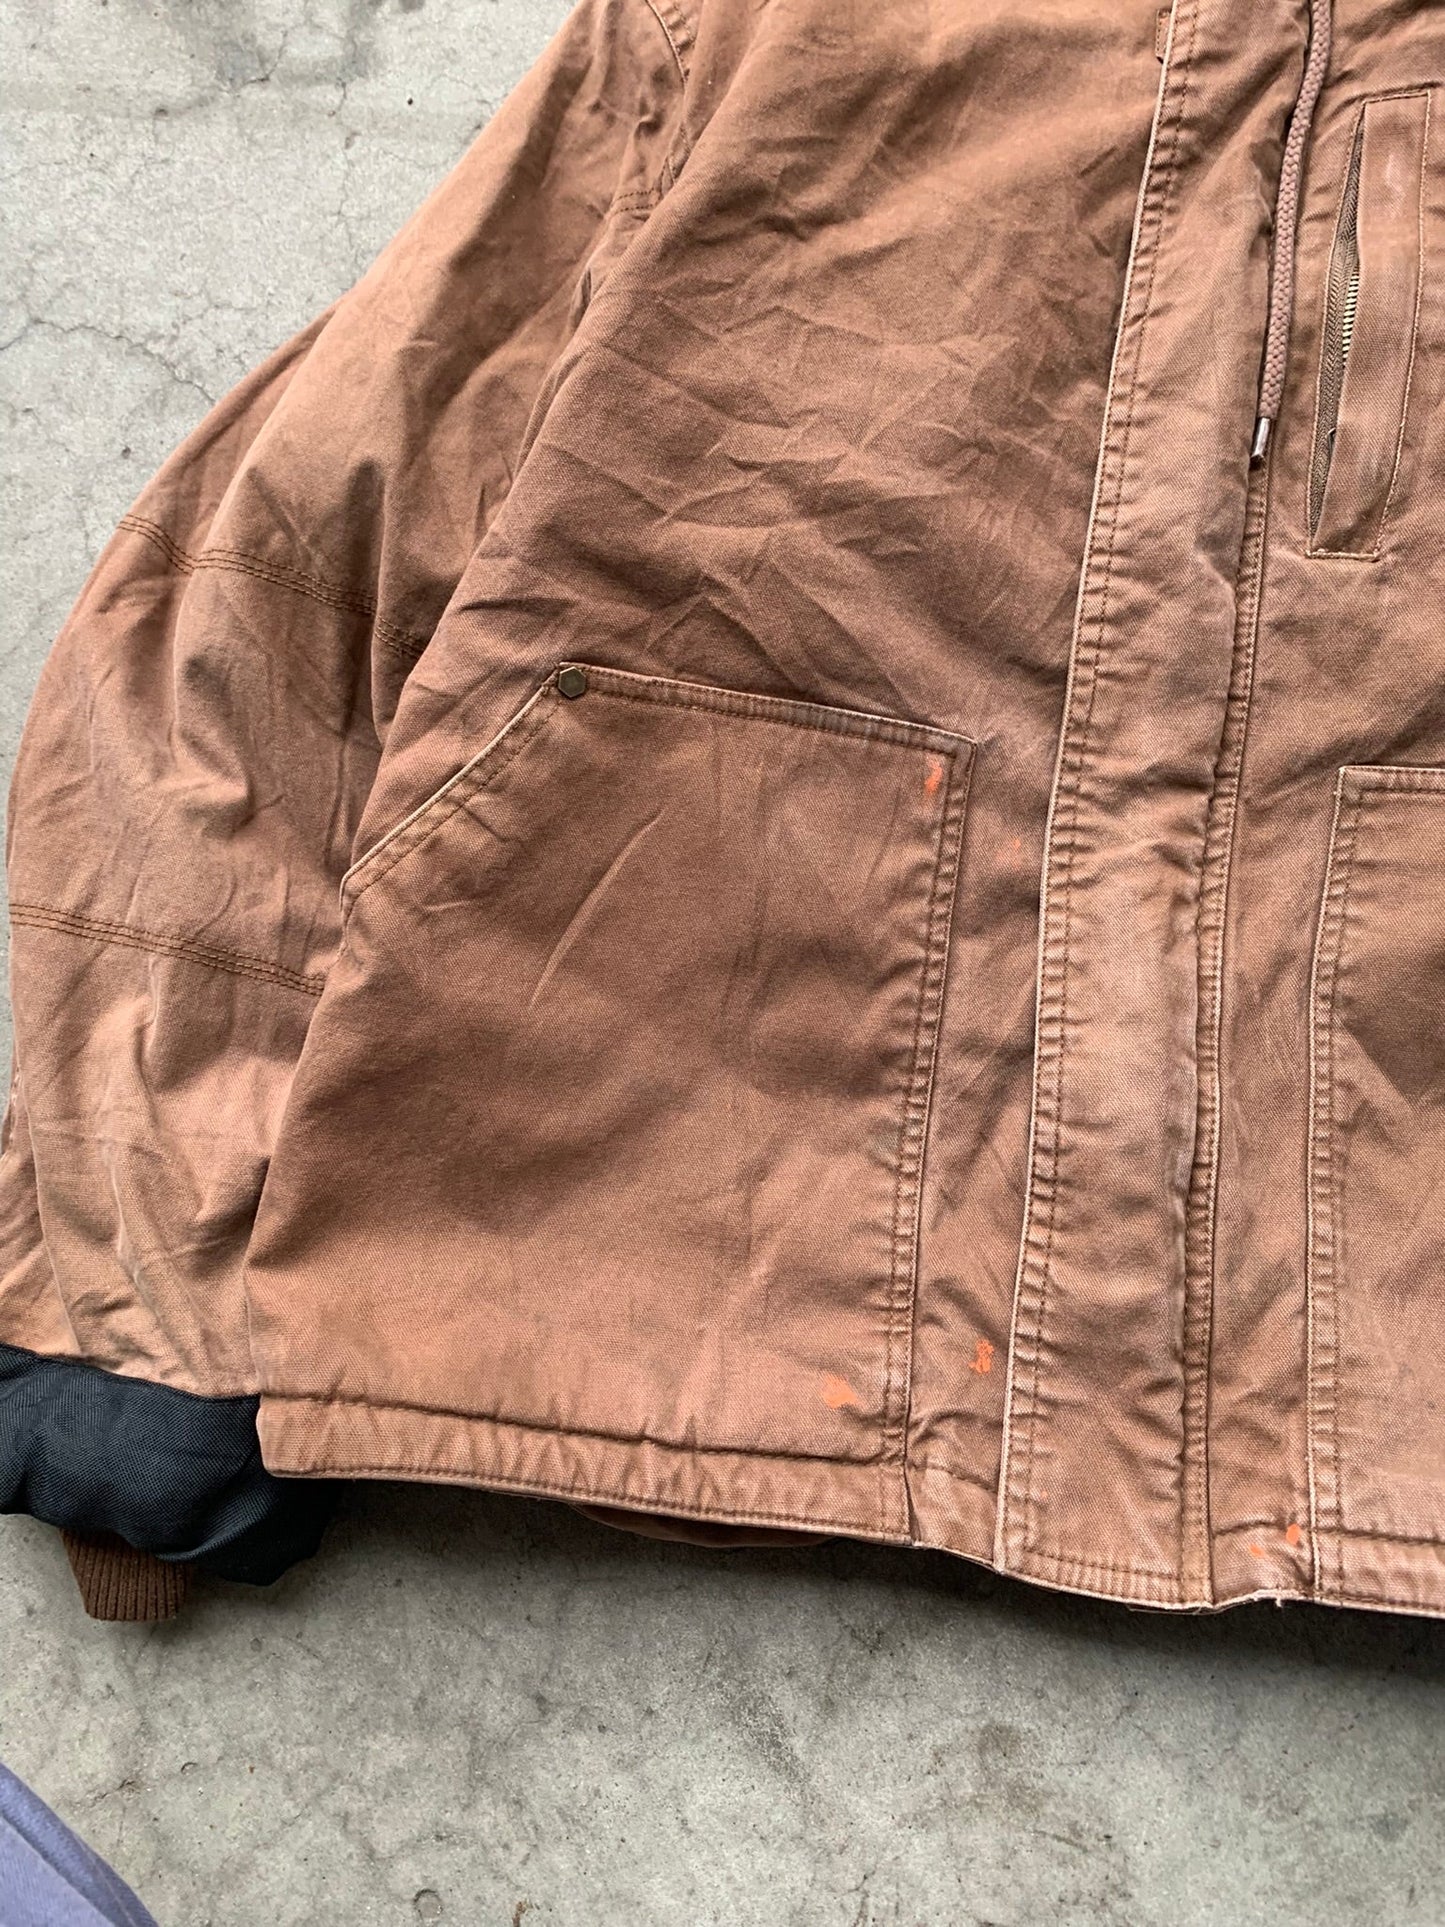 (XL/2X) Dickies Hooded Work Jacket